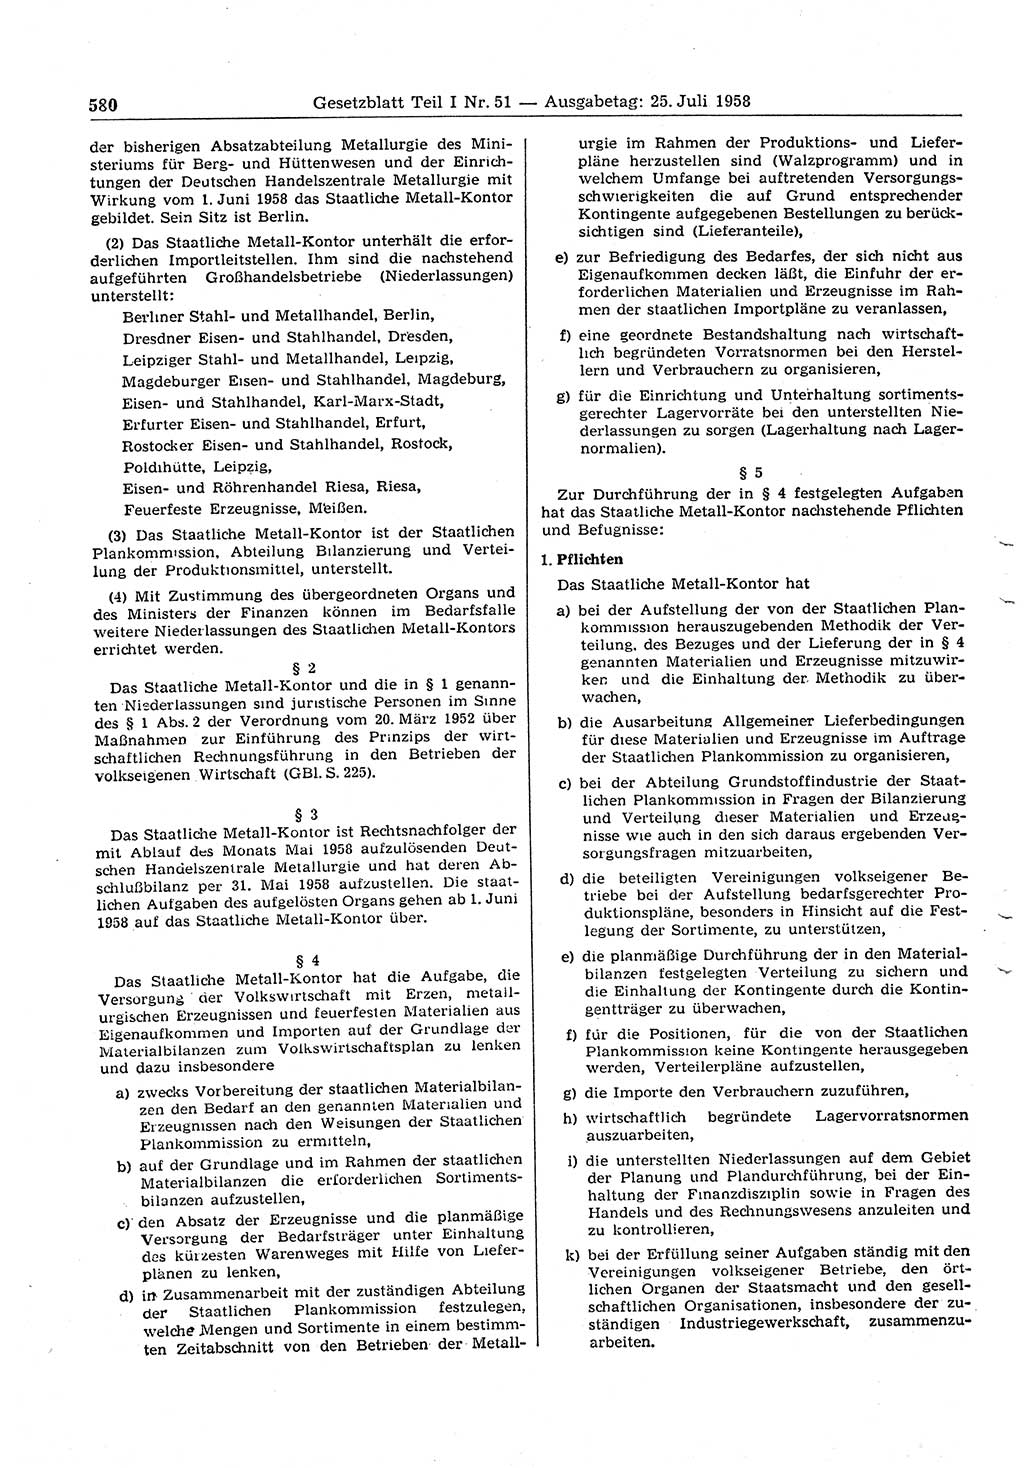 Gesetzblatt (GBl.) der Deutschen Demokratischen Republik (DDR) Teil Ⅰ 1958, Seite 580 (GBl. DDR Ⅰ 1958, S. 580)